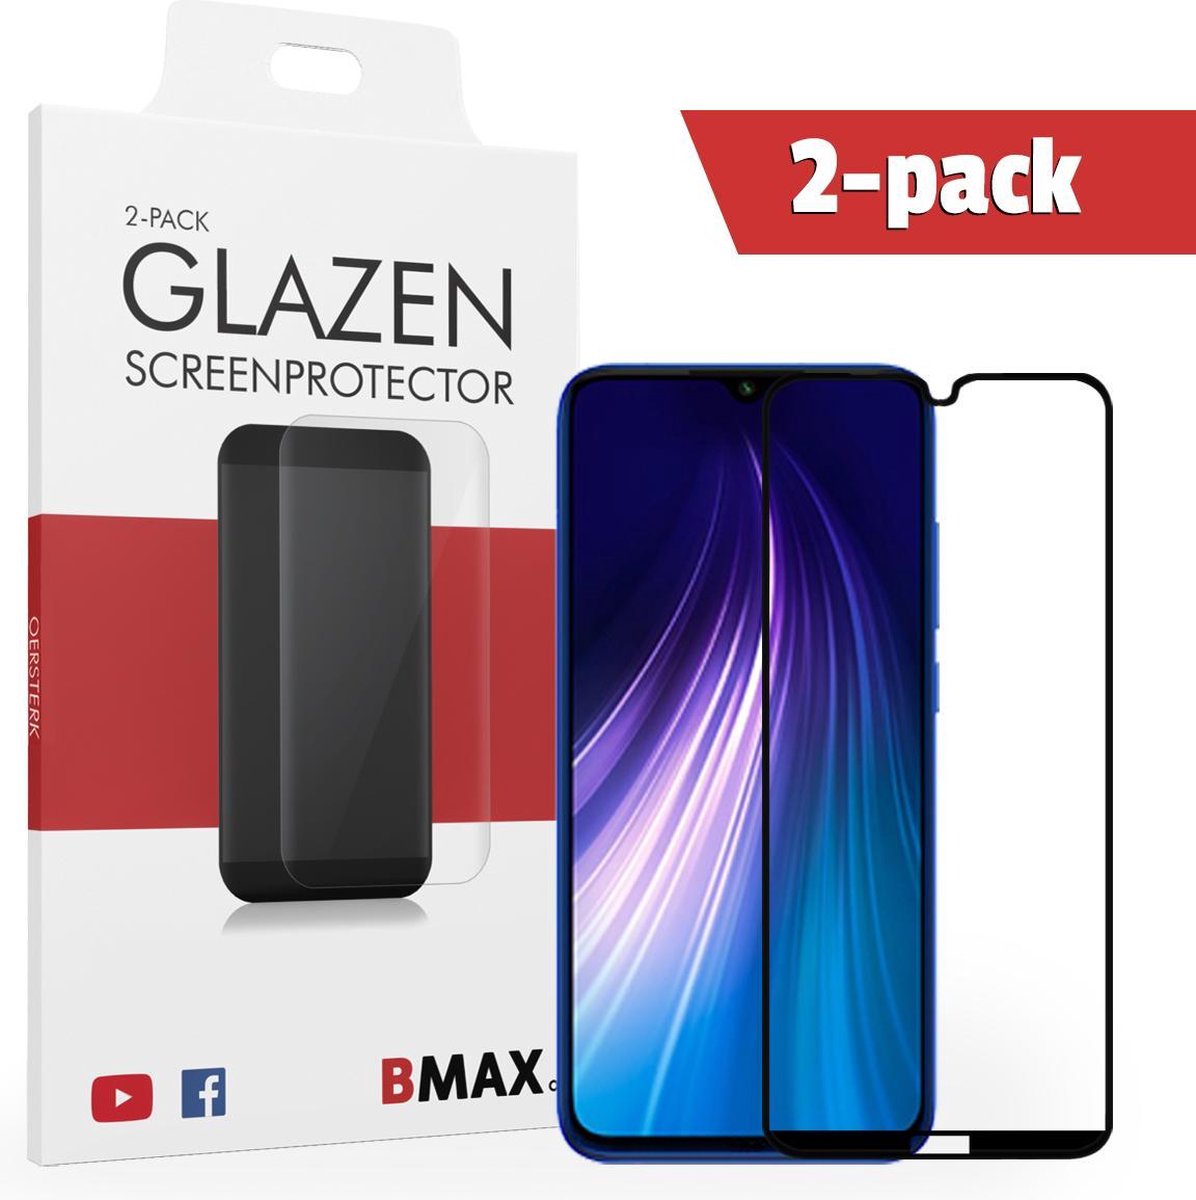 2-pack Bmax Lg K40s Screenprotector - Glass - Full Cover 2.5d - Black